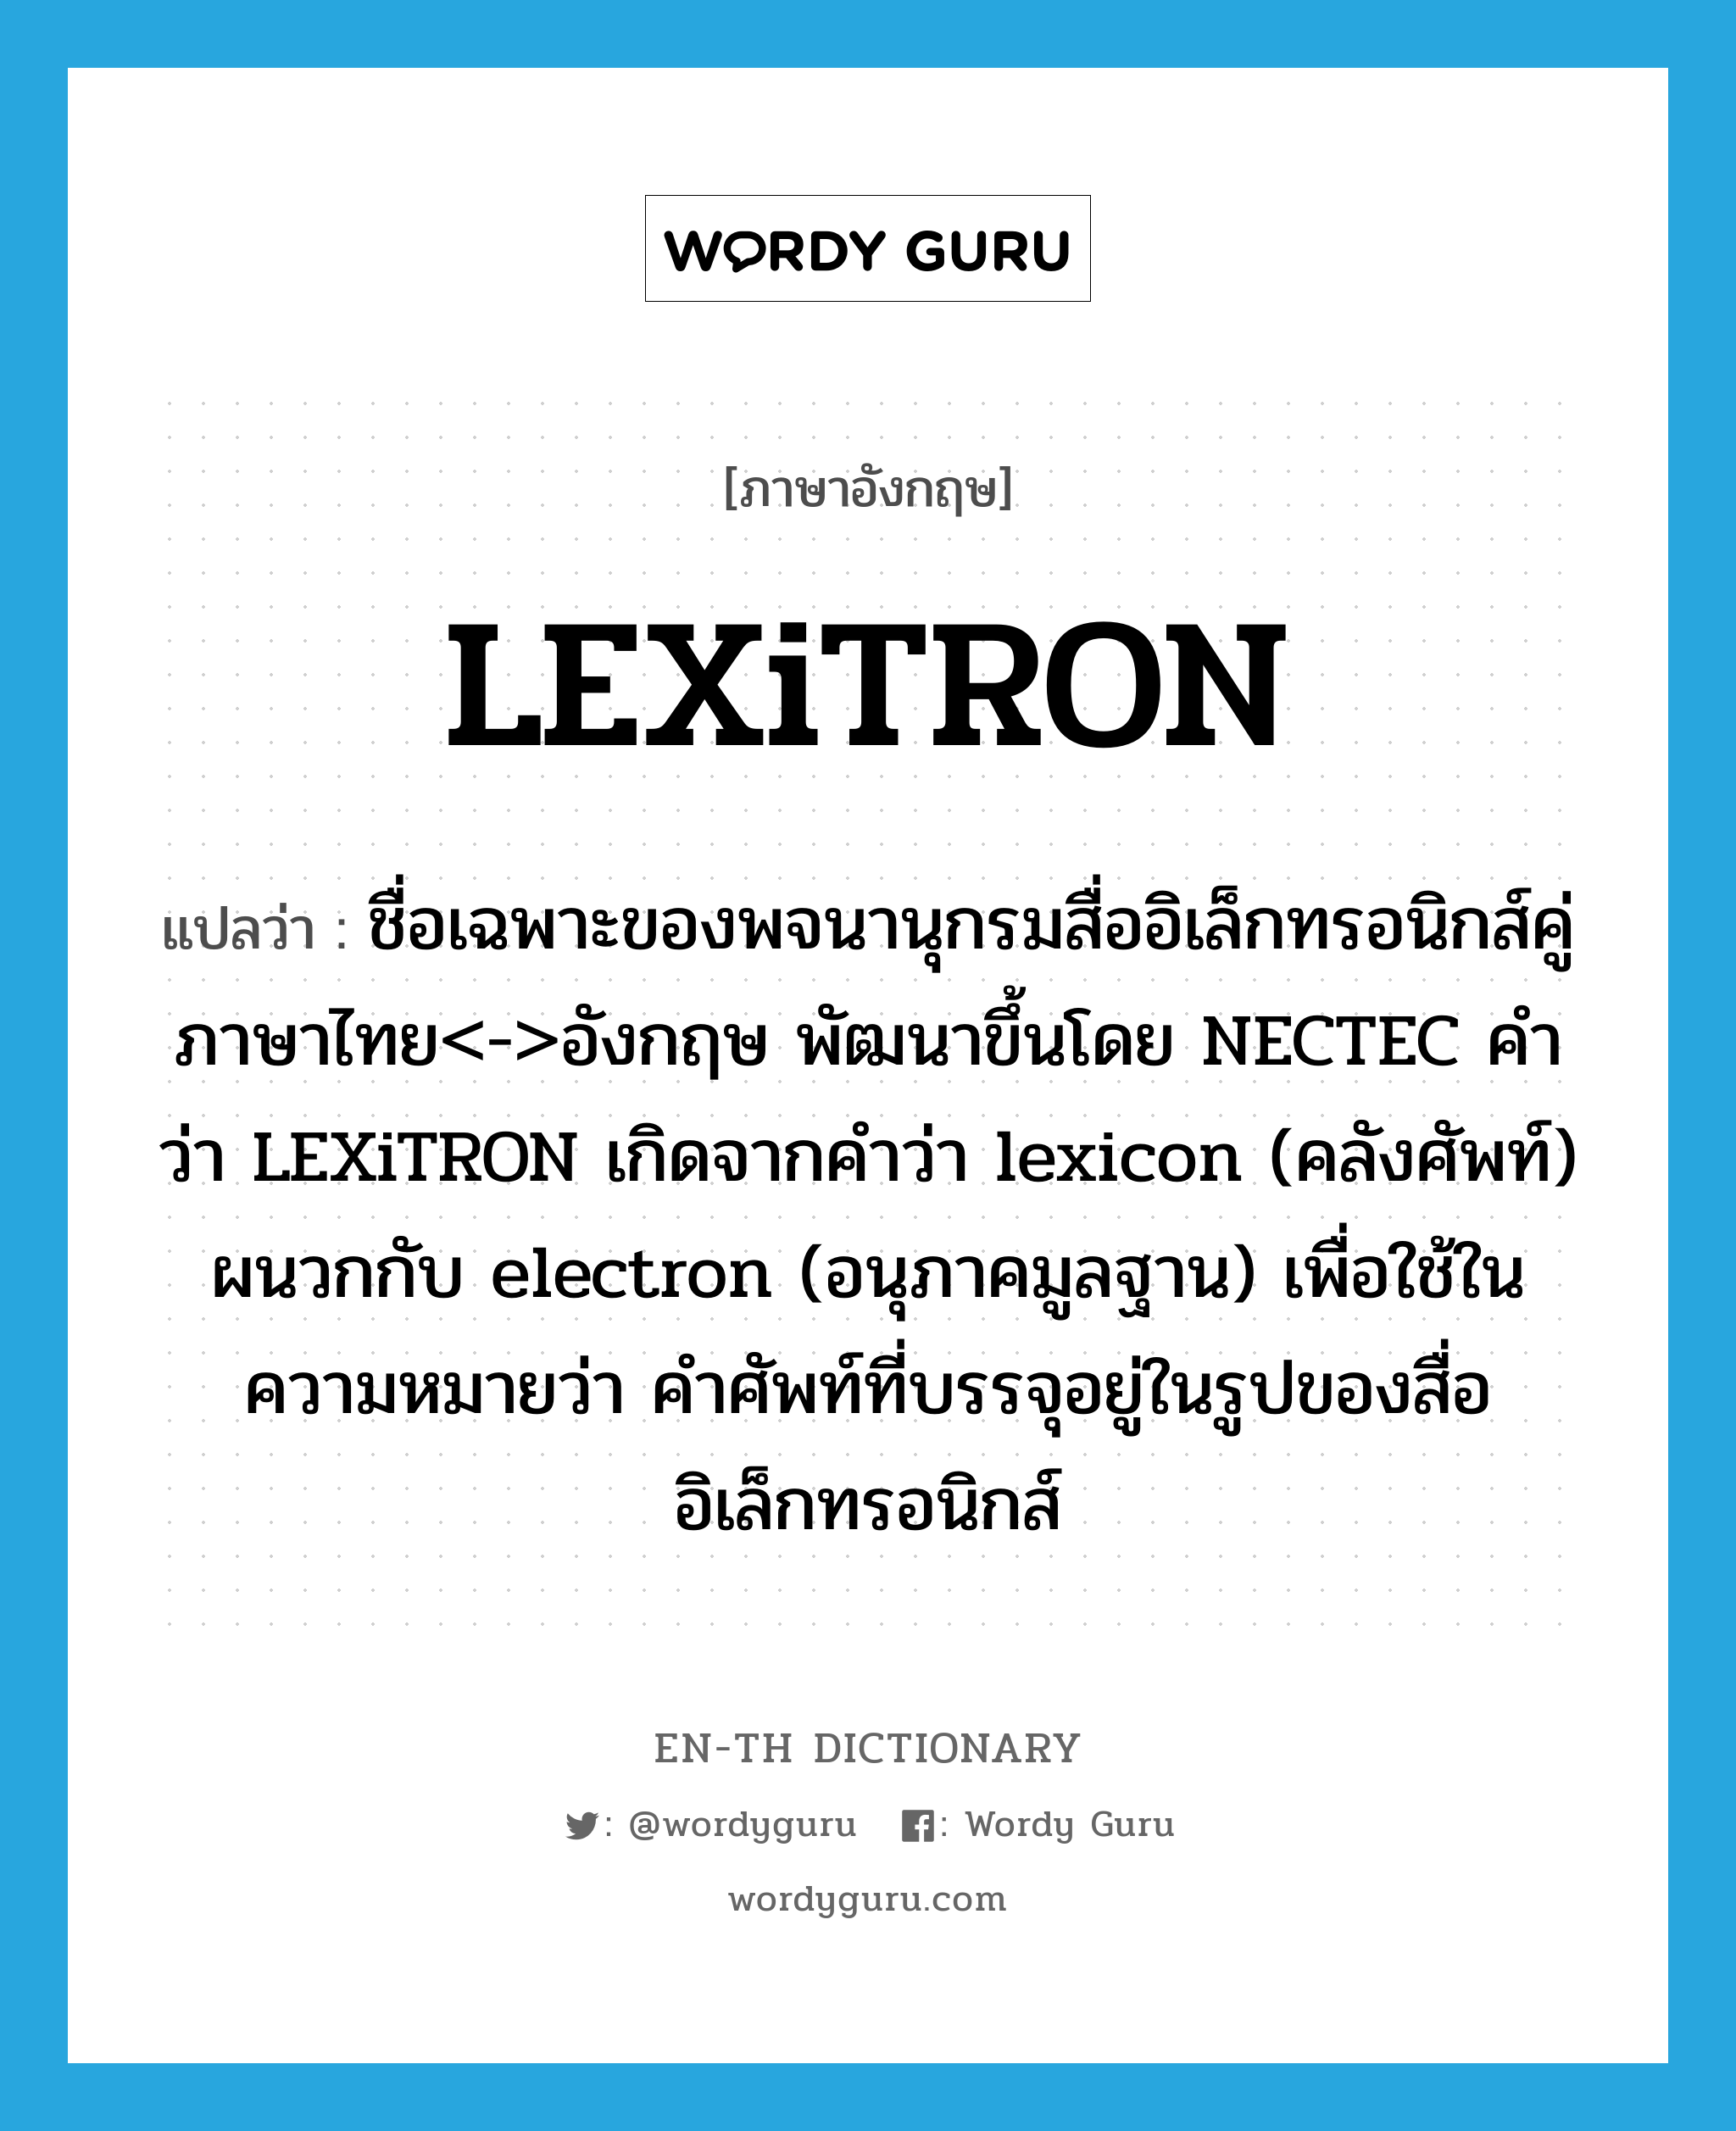 LEXiTRON แปลว่า?, คำศัพท์ภาษาอังกฤษ LEXiTRON แปลว่า ชื่อเฉพาะของพจนานุกรมสื่ออิเล็กทรอนิกส์คู่ภาษาไทย<->อังกฤษ พัฒนาขึ้นโดย NECTEC คำว่า LEXiTRON เกิดจากคำว่า lexicon (คลังศัพท์) ผนวกกับ electron (อนุภาคมูลฐาน) เพื่อใช้ในความหมายว่า คำศัพท์ที่บรรจุอยู่ในรูปของสื่ออิเล็กทรอนิกส์ ประเภท N หมวด N